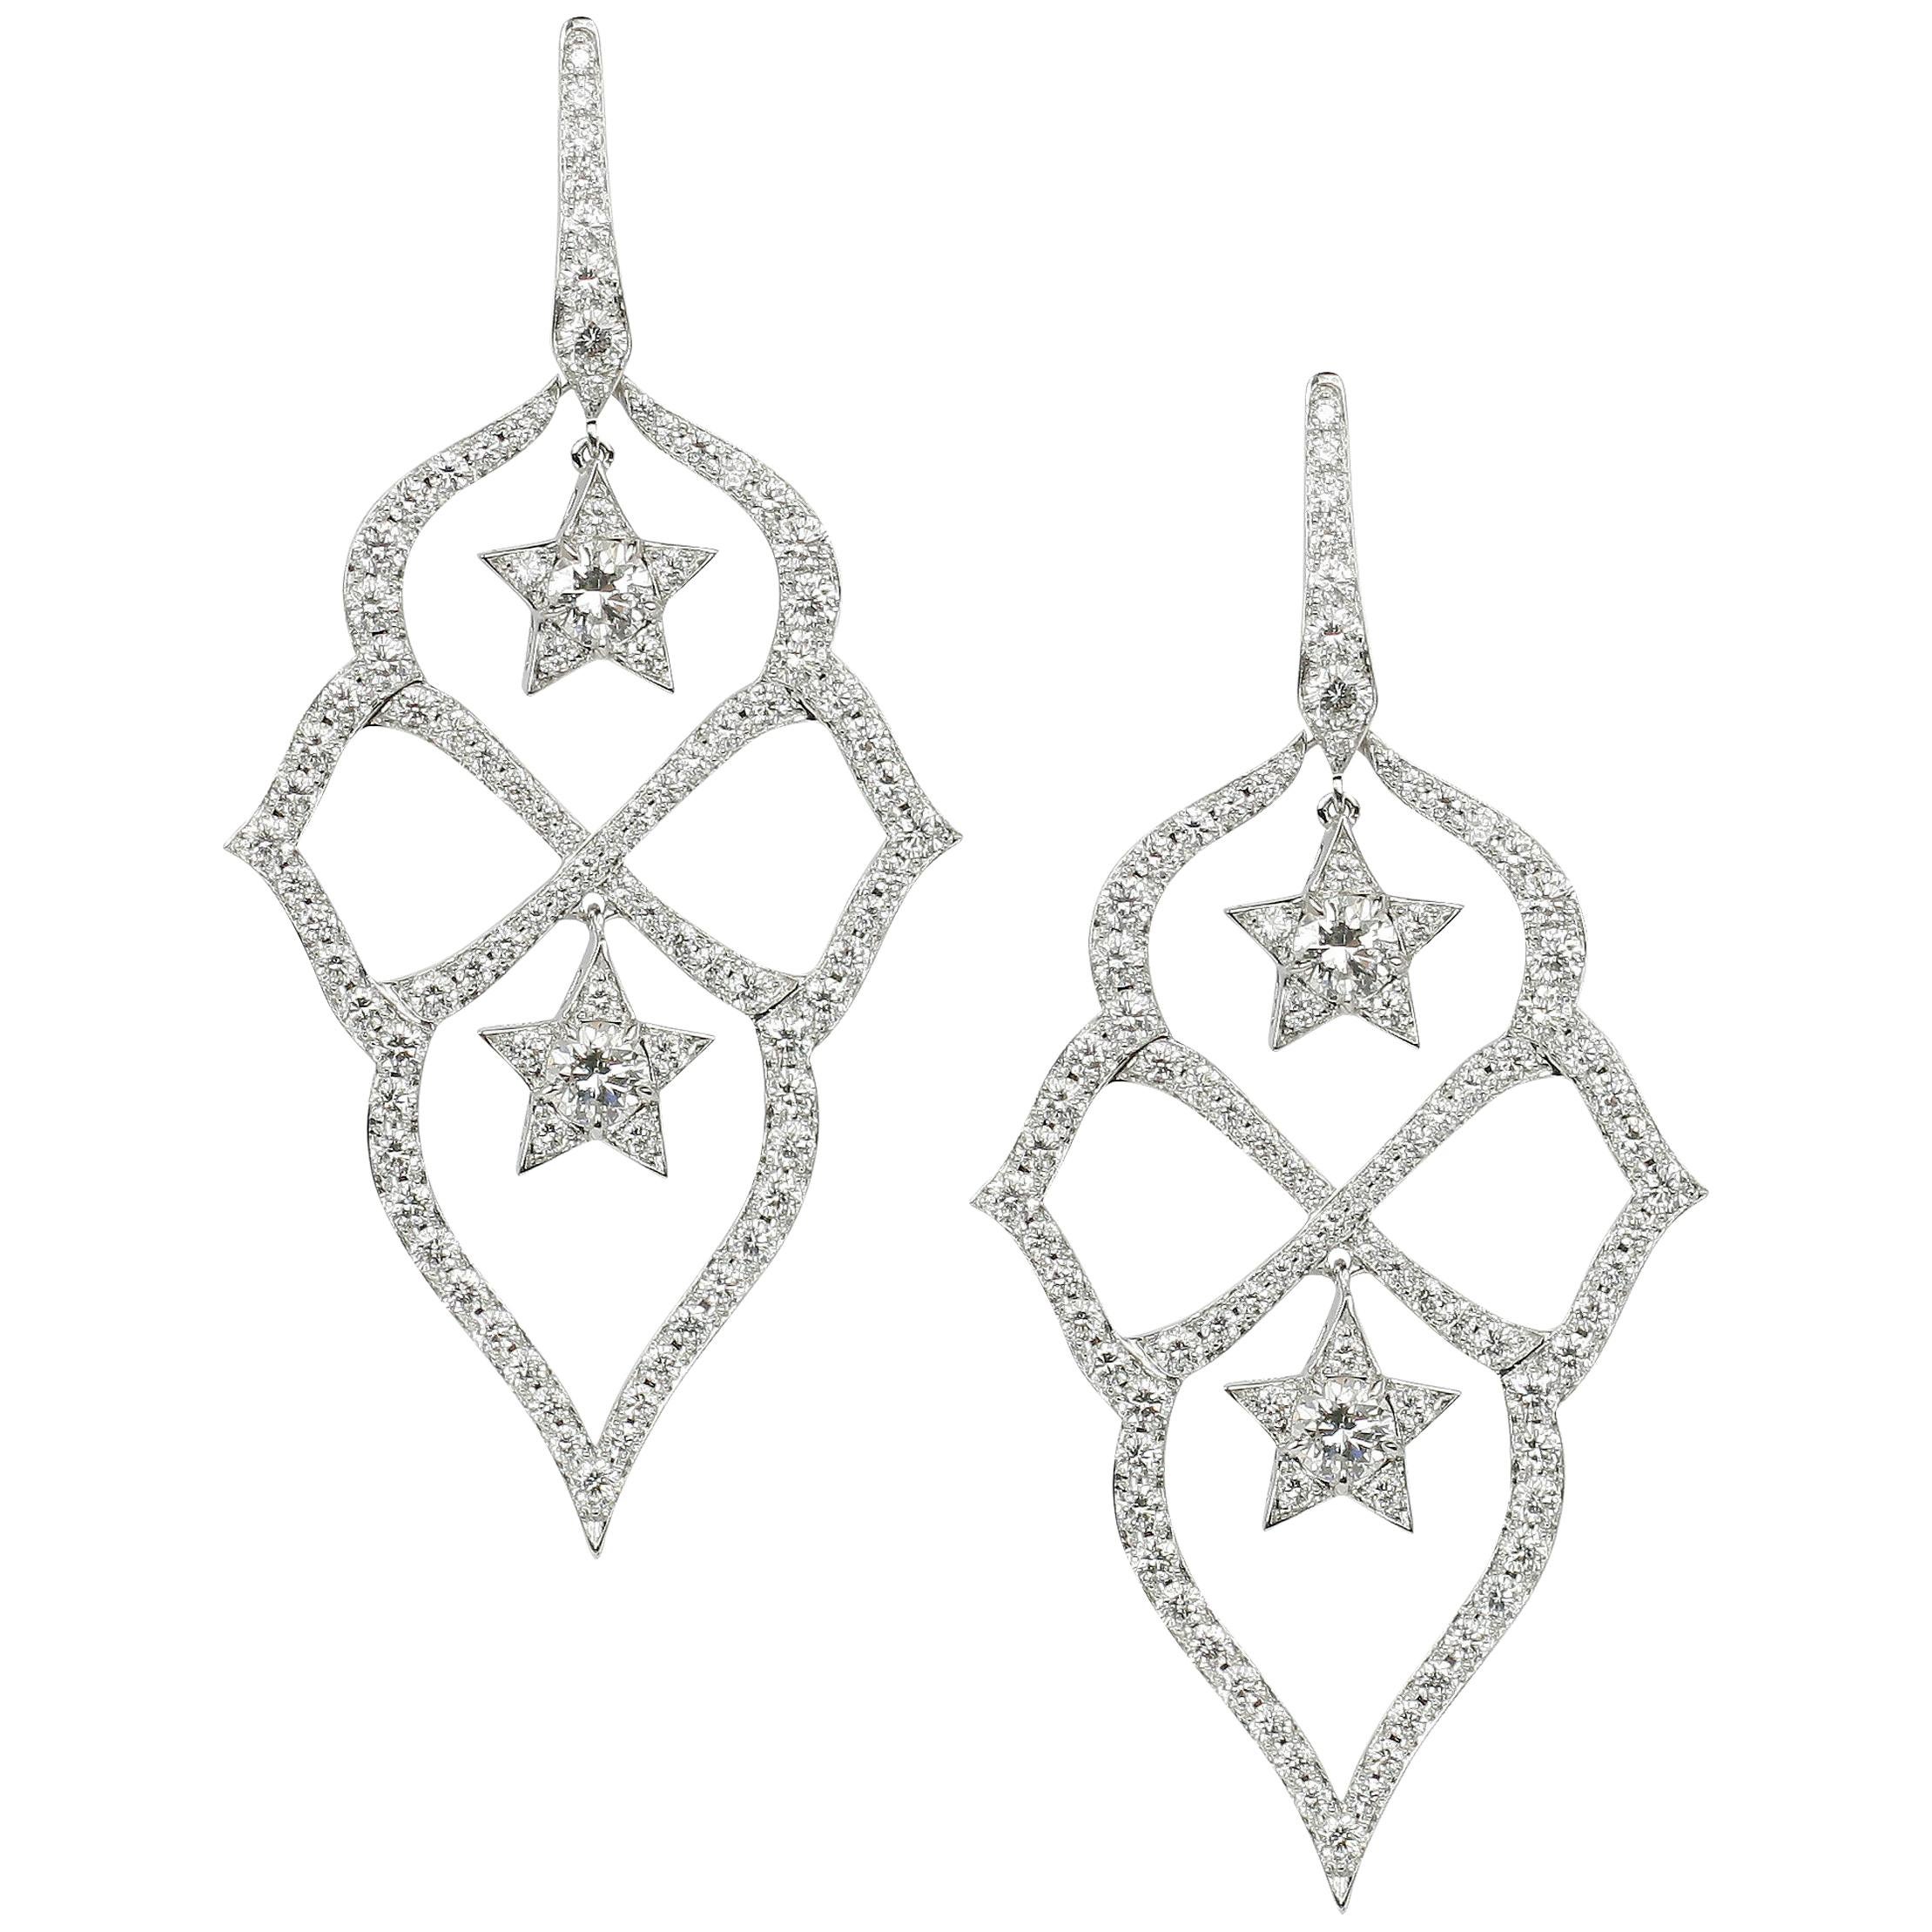 Stephen Webster Belle Époque Starlet White Diamond and White Gold Small Earrings